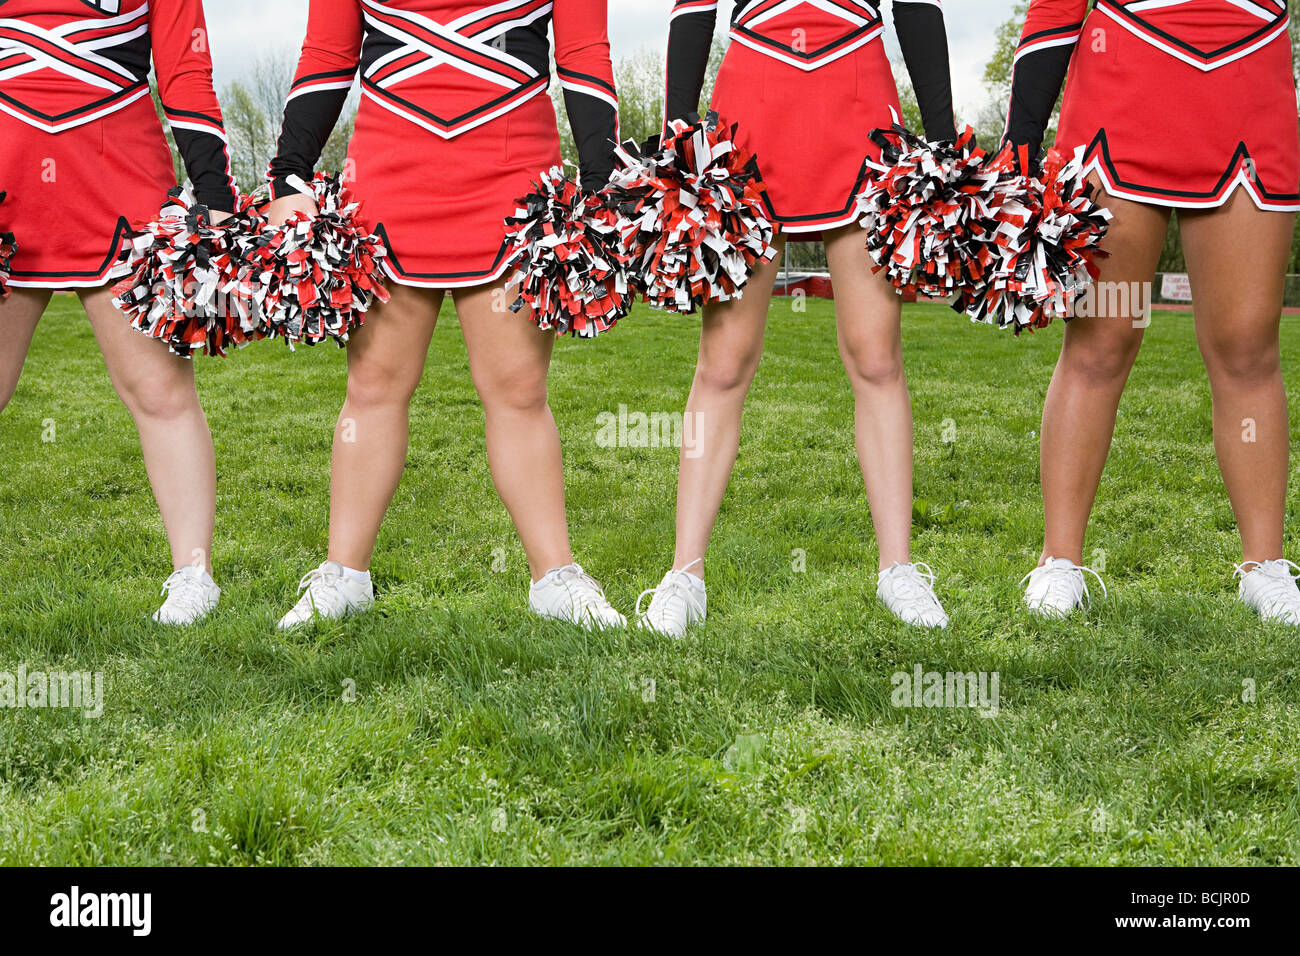 Cheerleaders with pom poms Stock Photo